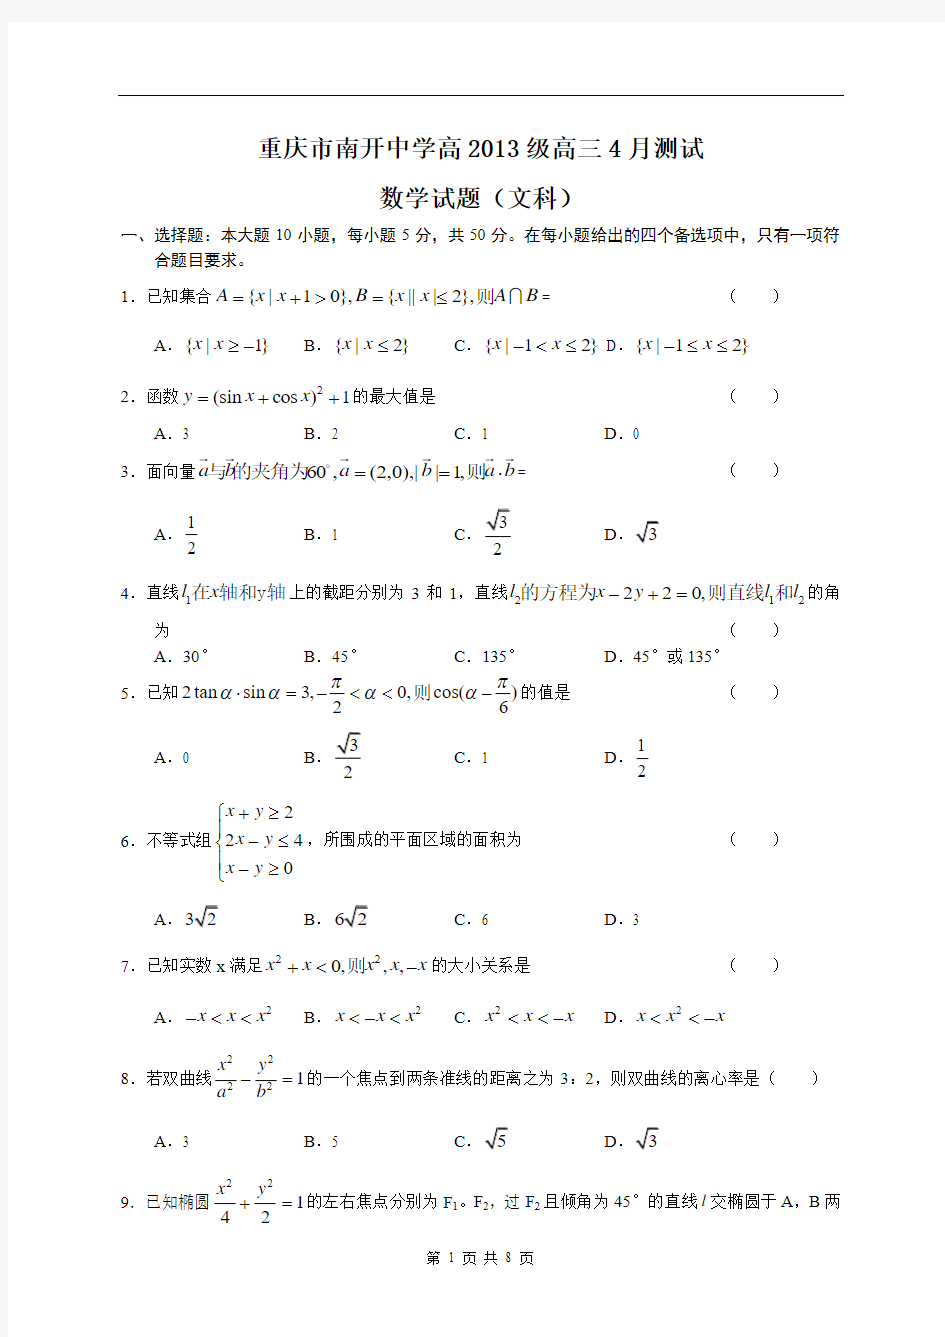 重庆市南开中学高2013级高三4月测试文科数学